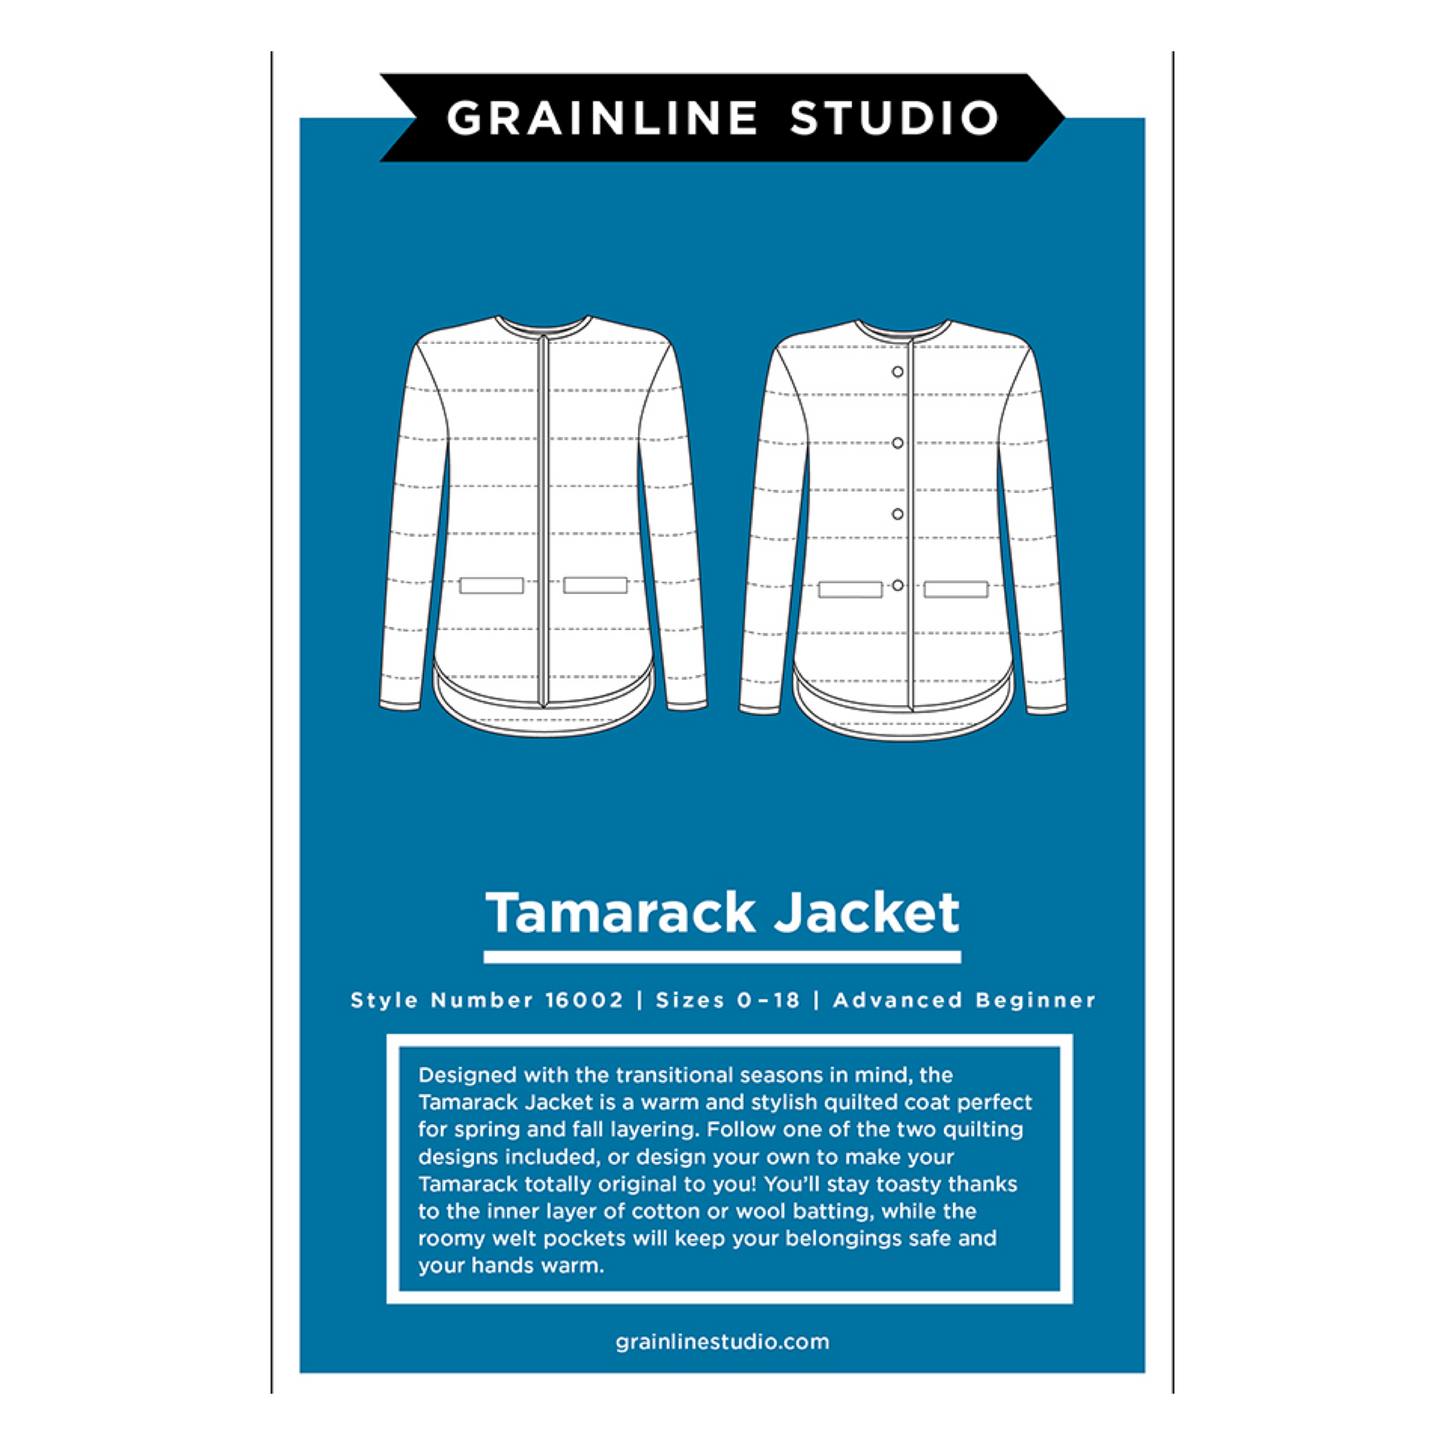 Tamarck Jacket-0-18-Grainline Studios